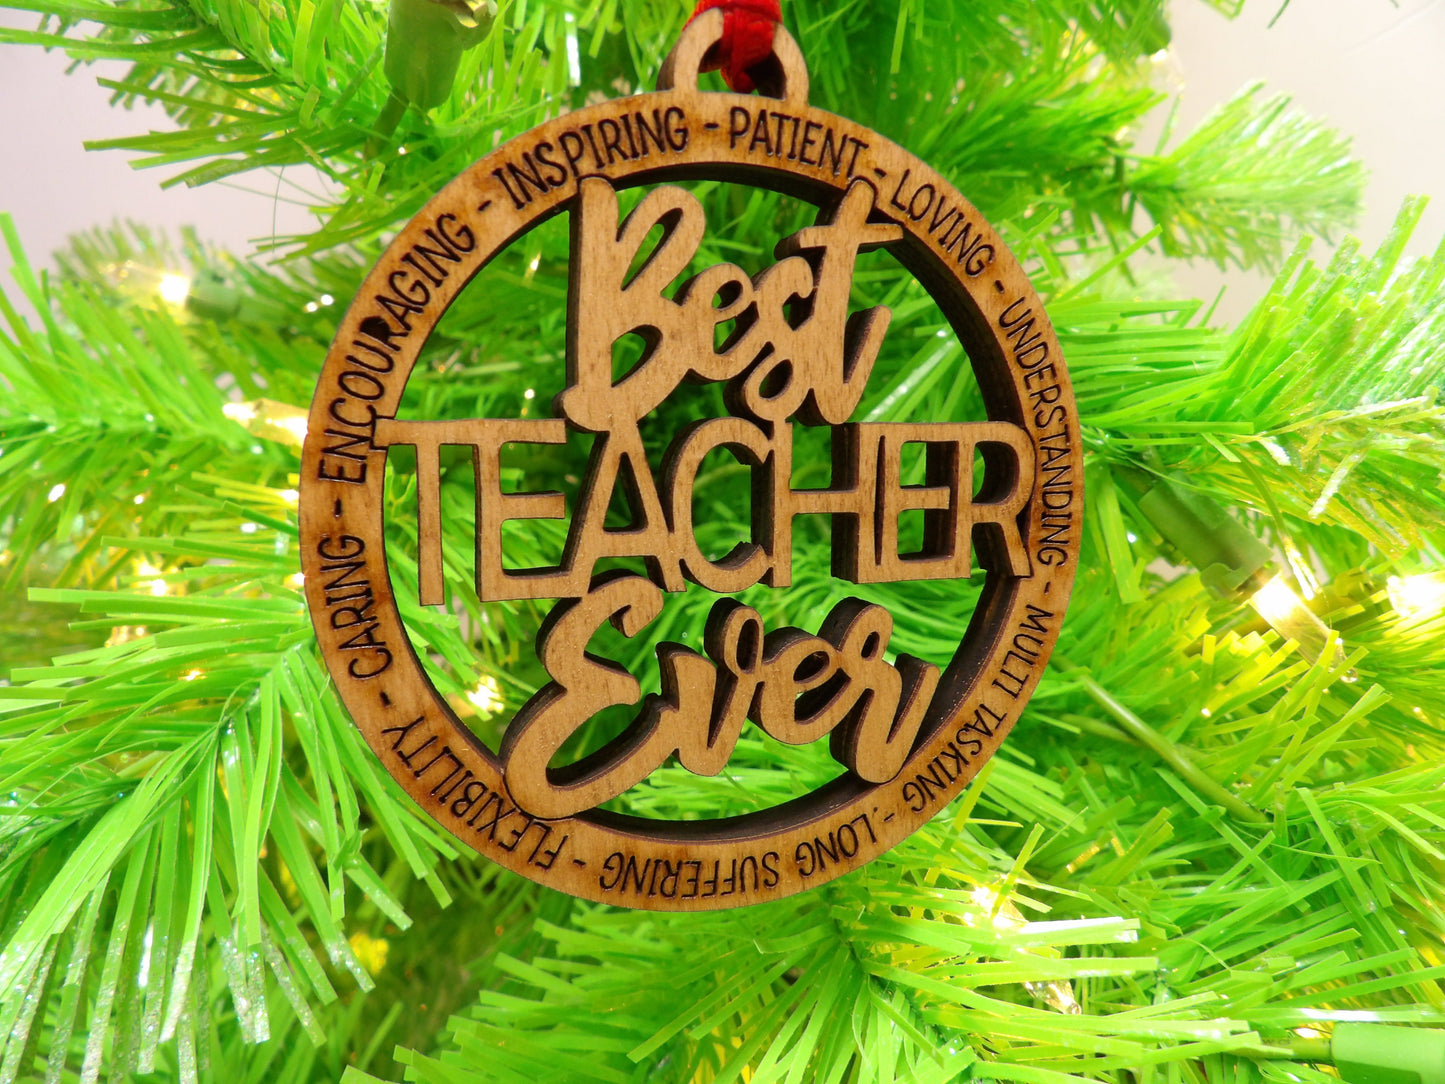 Best Teacher Ever Ornament